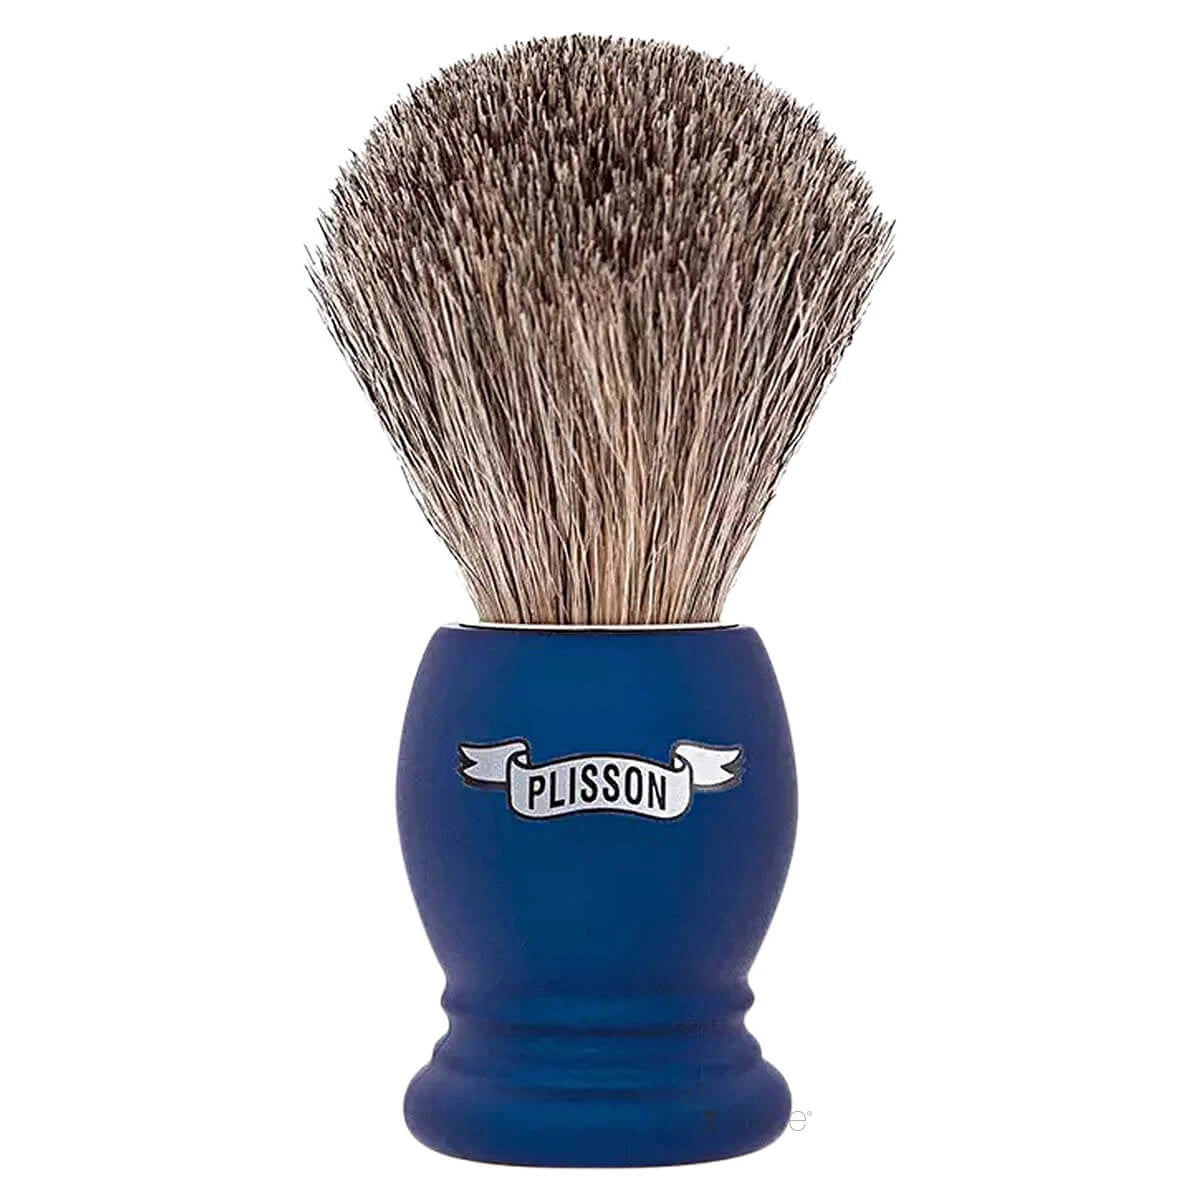 Plisson Shaving Brush, Russian Grey Badger & Night Blue- Size 12